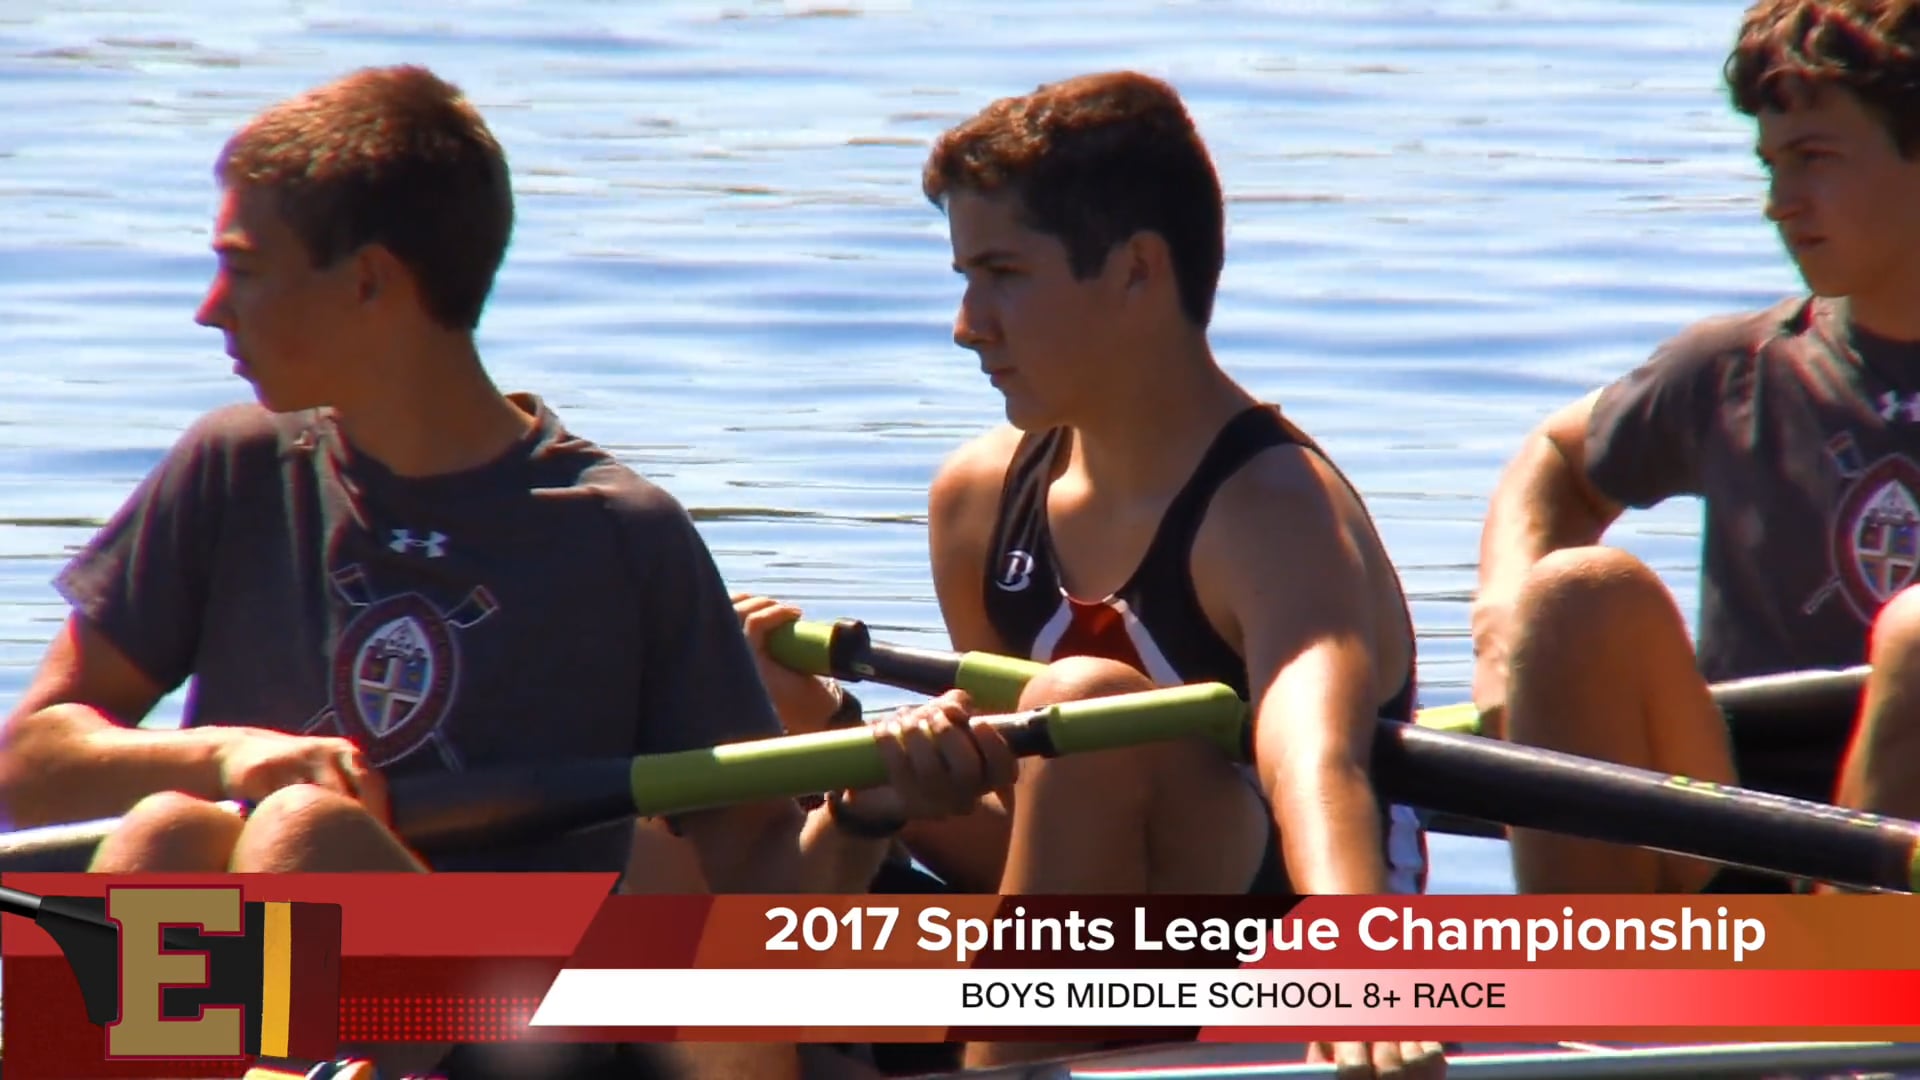 Boys Middle School Race 2017 Sprints League Championship